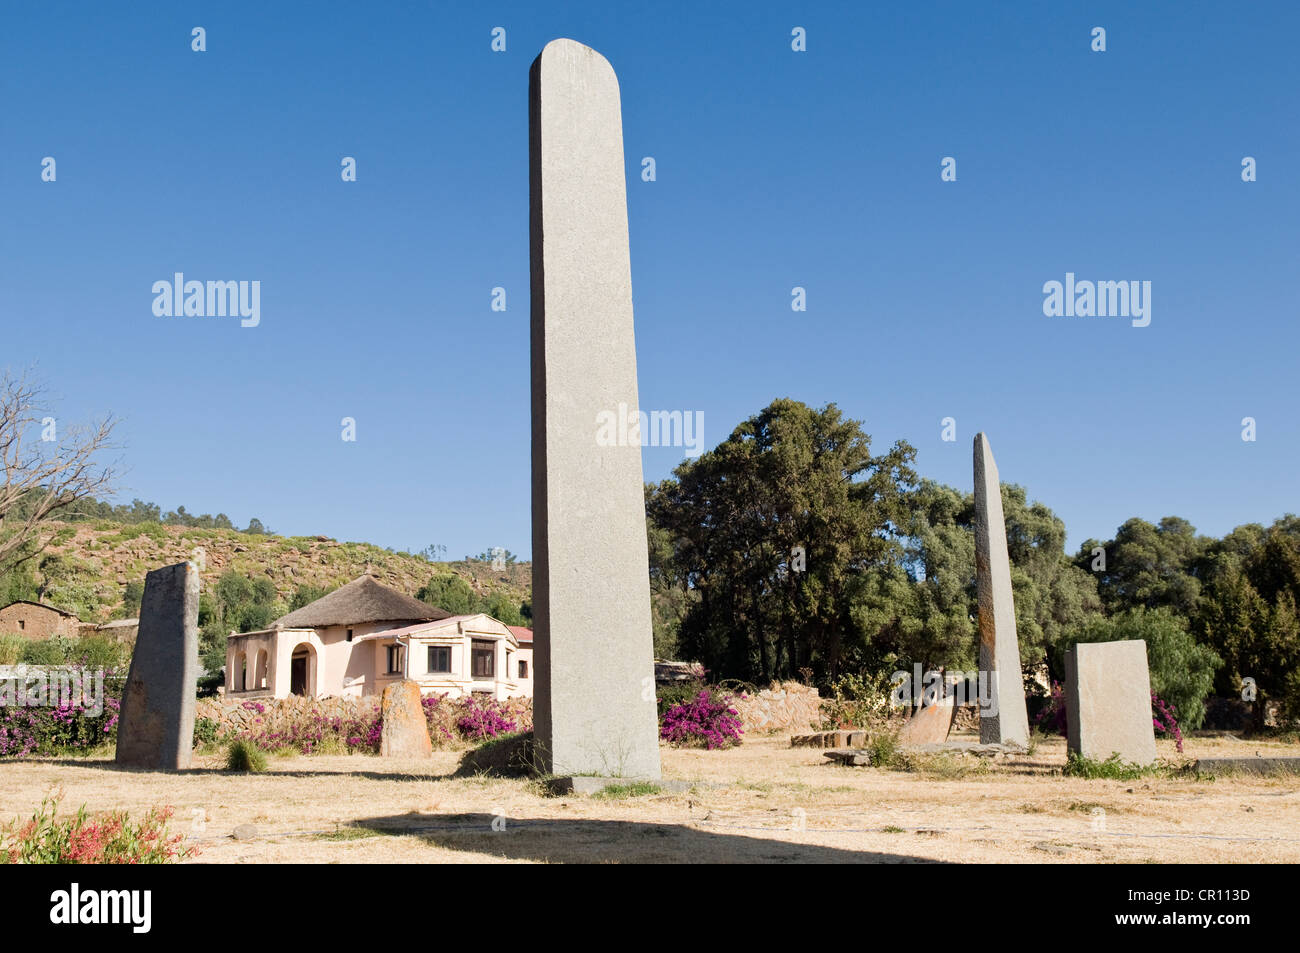 Etiopia, Tigray, città di Axum, le rovine della vecchia città sono classificati come patrimonio mondiale dall' UNESCO, stele campo, lato nord Foto Stock